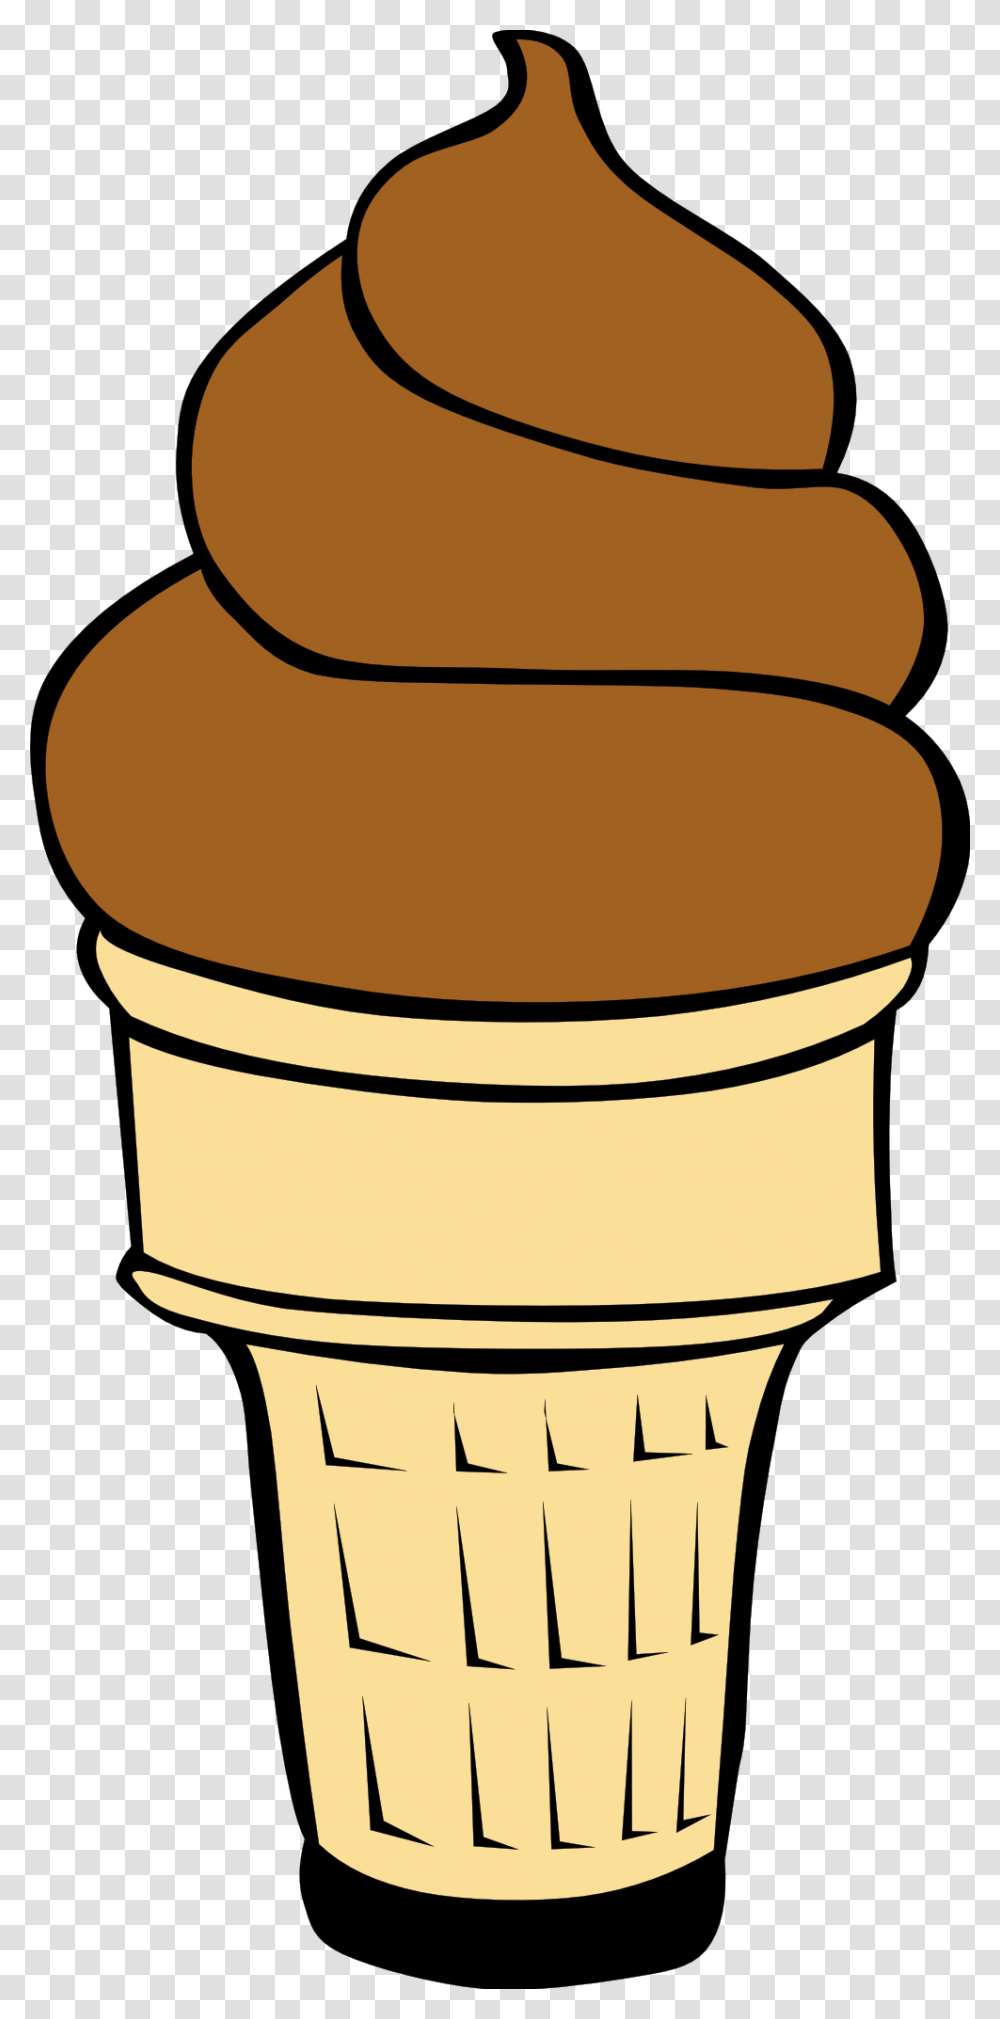 Ice Cream Cones Snow Cone Clip Art Ice Cream Download, Light, Birthday Cake, Dessert, Food Transparent Png